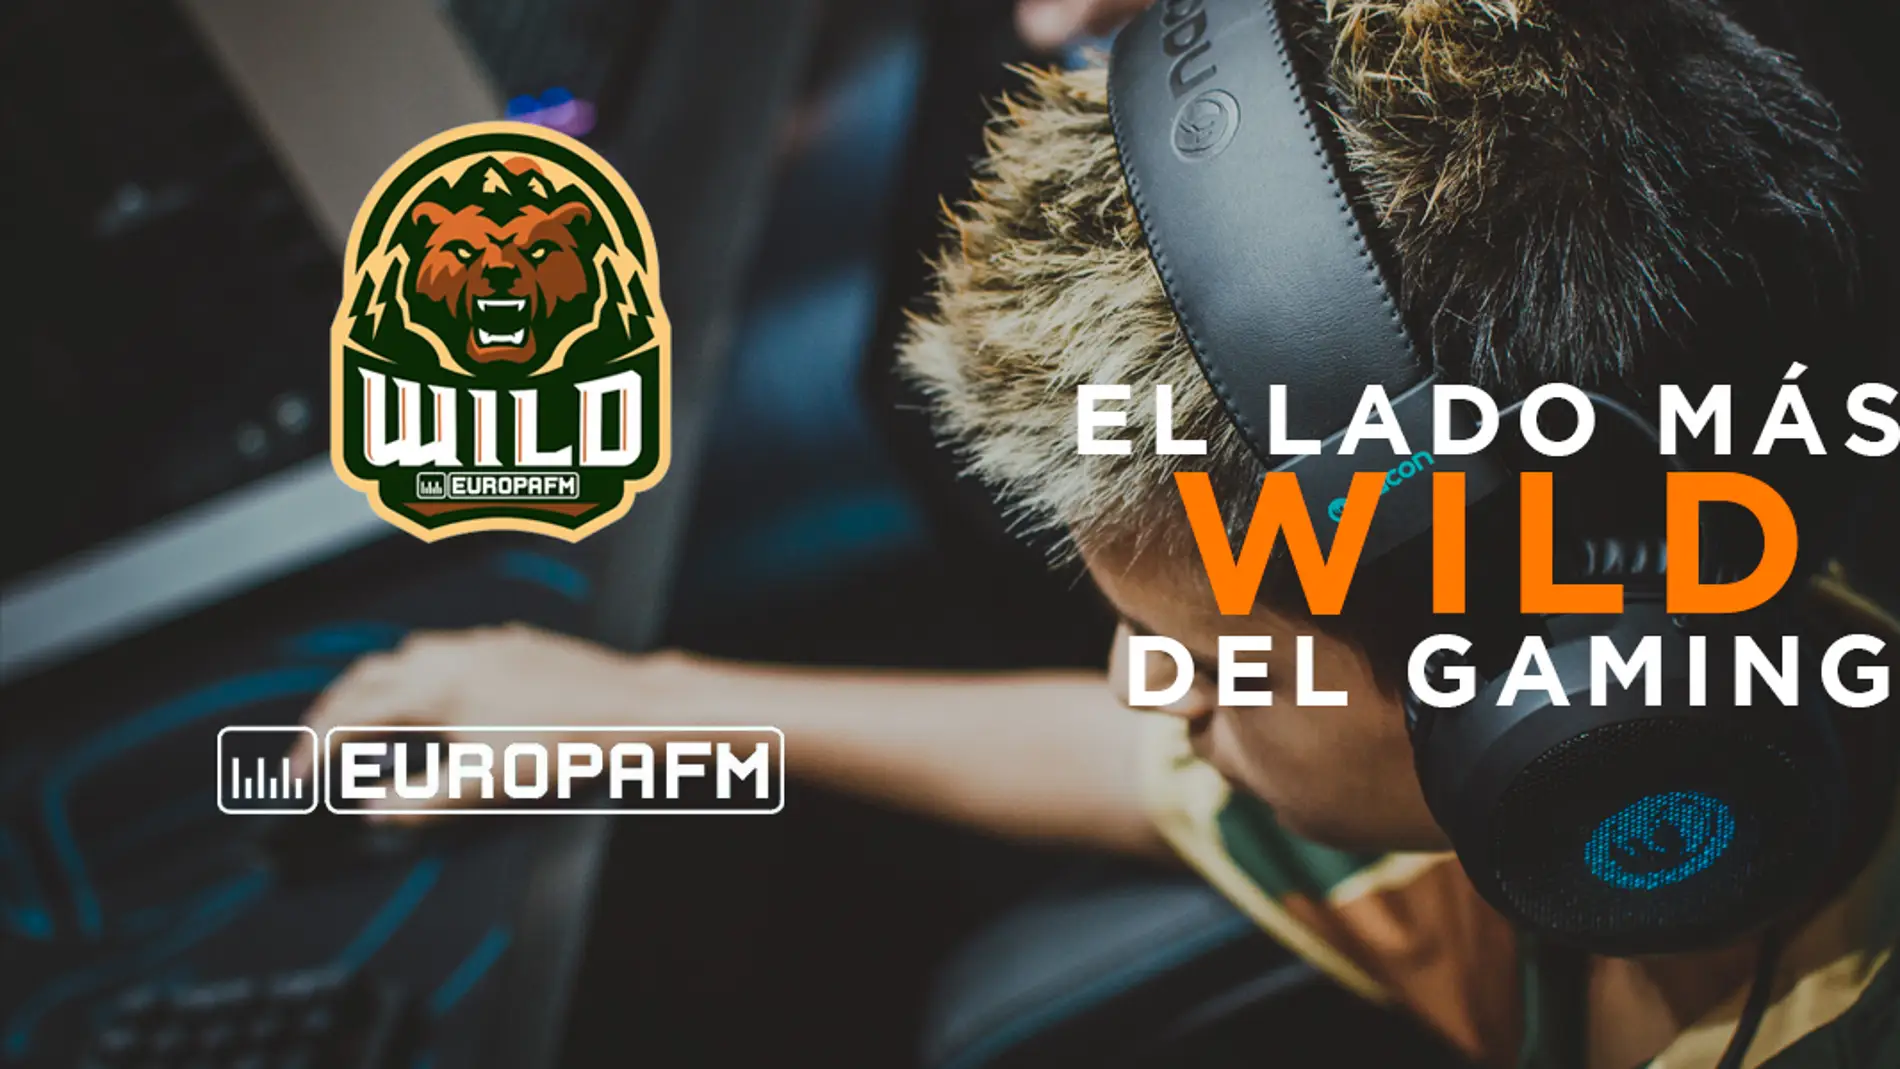 Europa FM Wild Play, el lado más wild del gaming